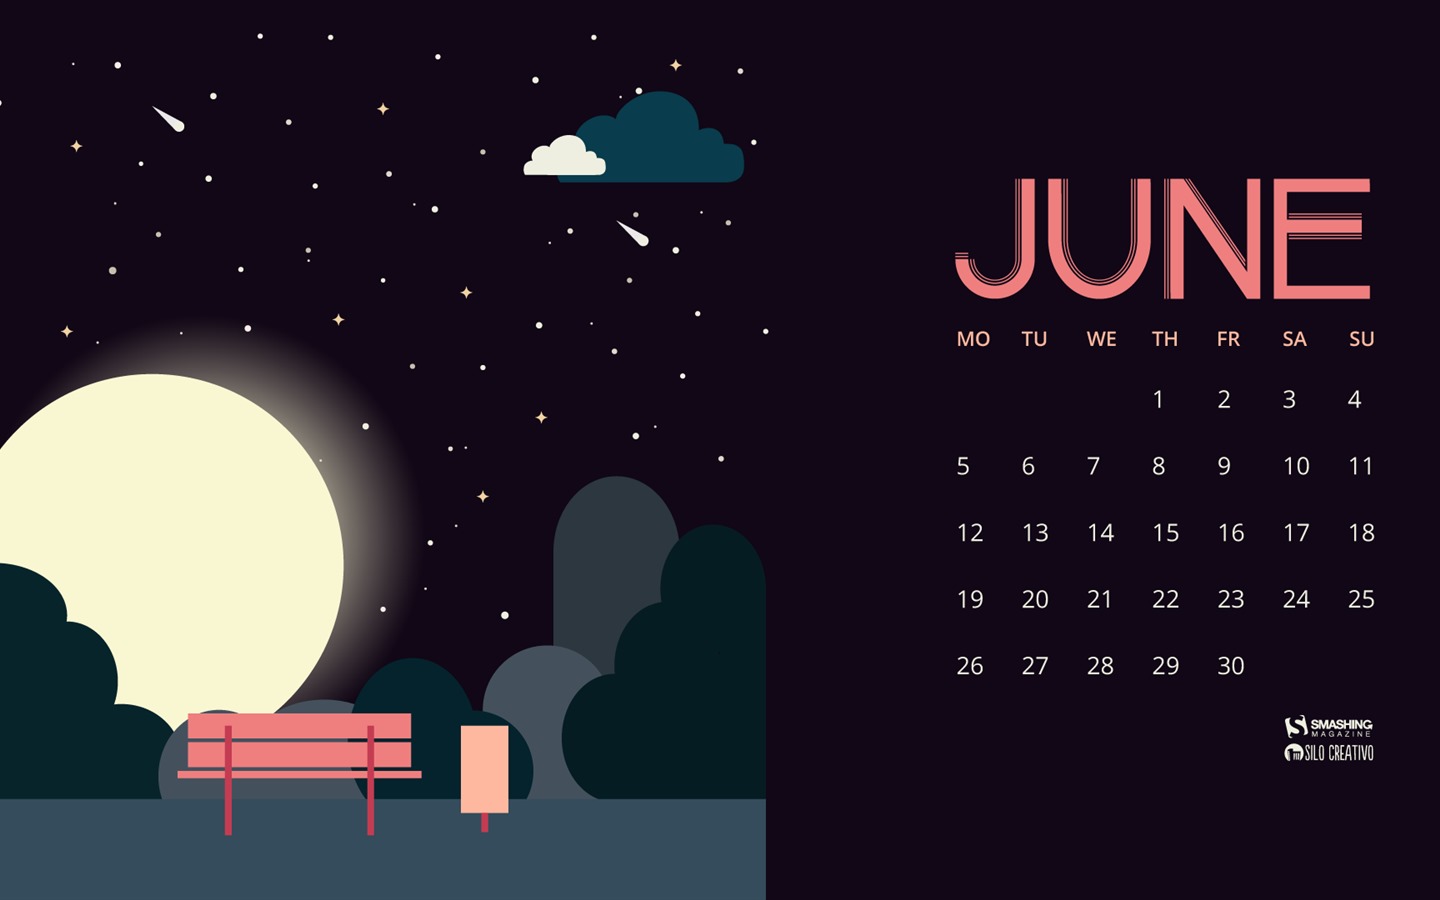 June 2017 calendar wallpaper #16 - 1440x900